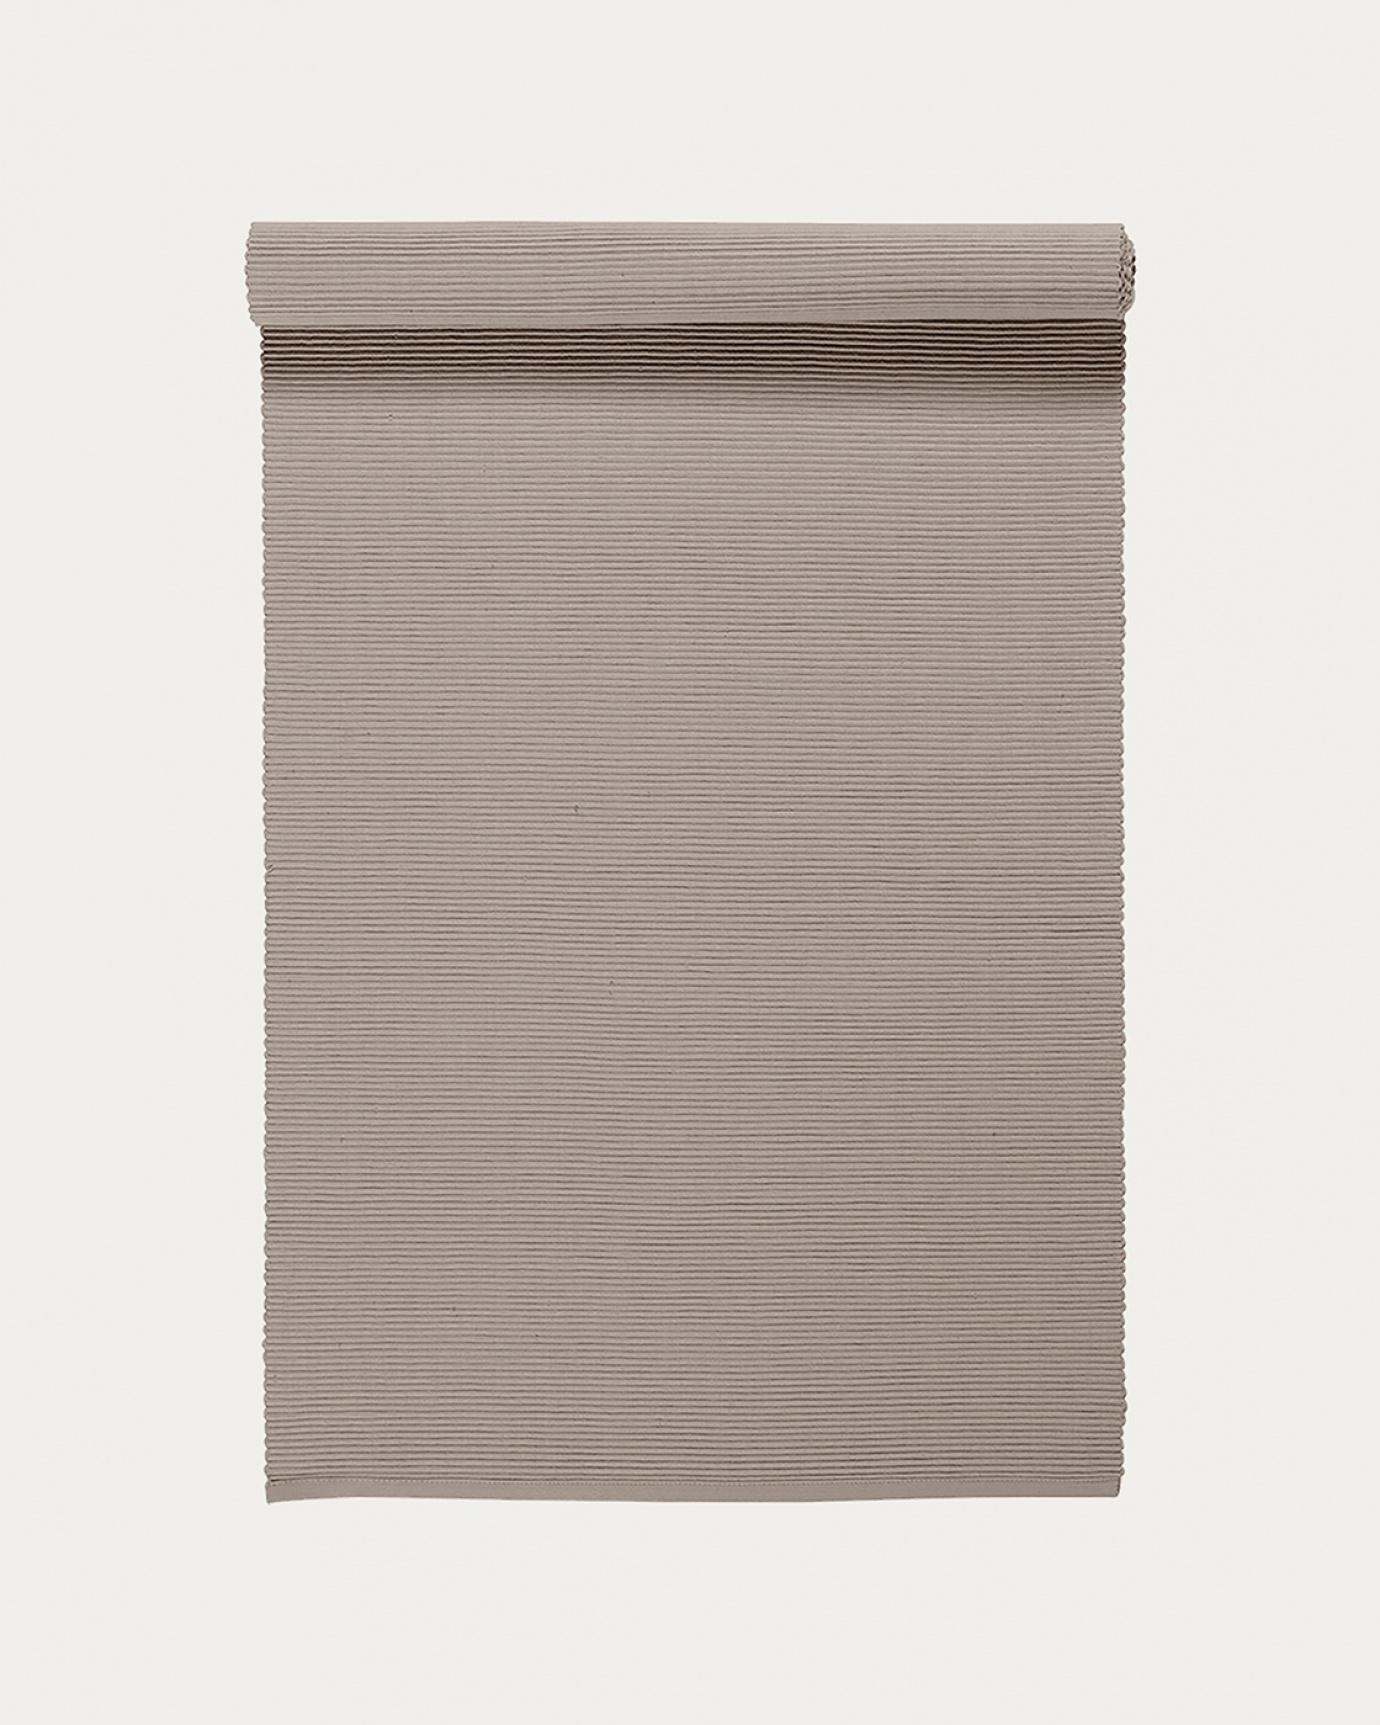 Produktbild maulwurfbraun UNI Tischläufer aus weicher Baumwolle in Rippenqualität von LINUM DESIGN. Größe 45x150 cm.